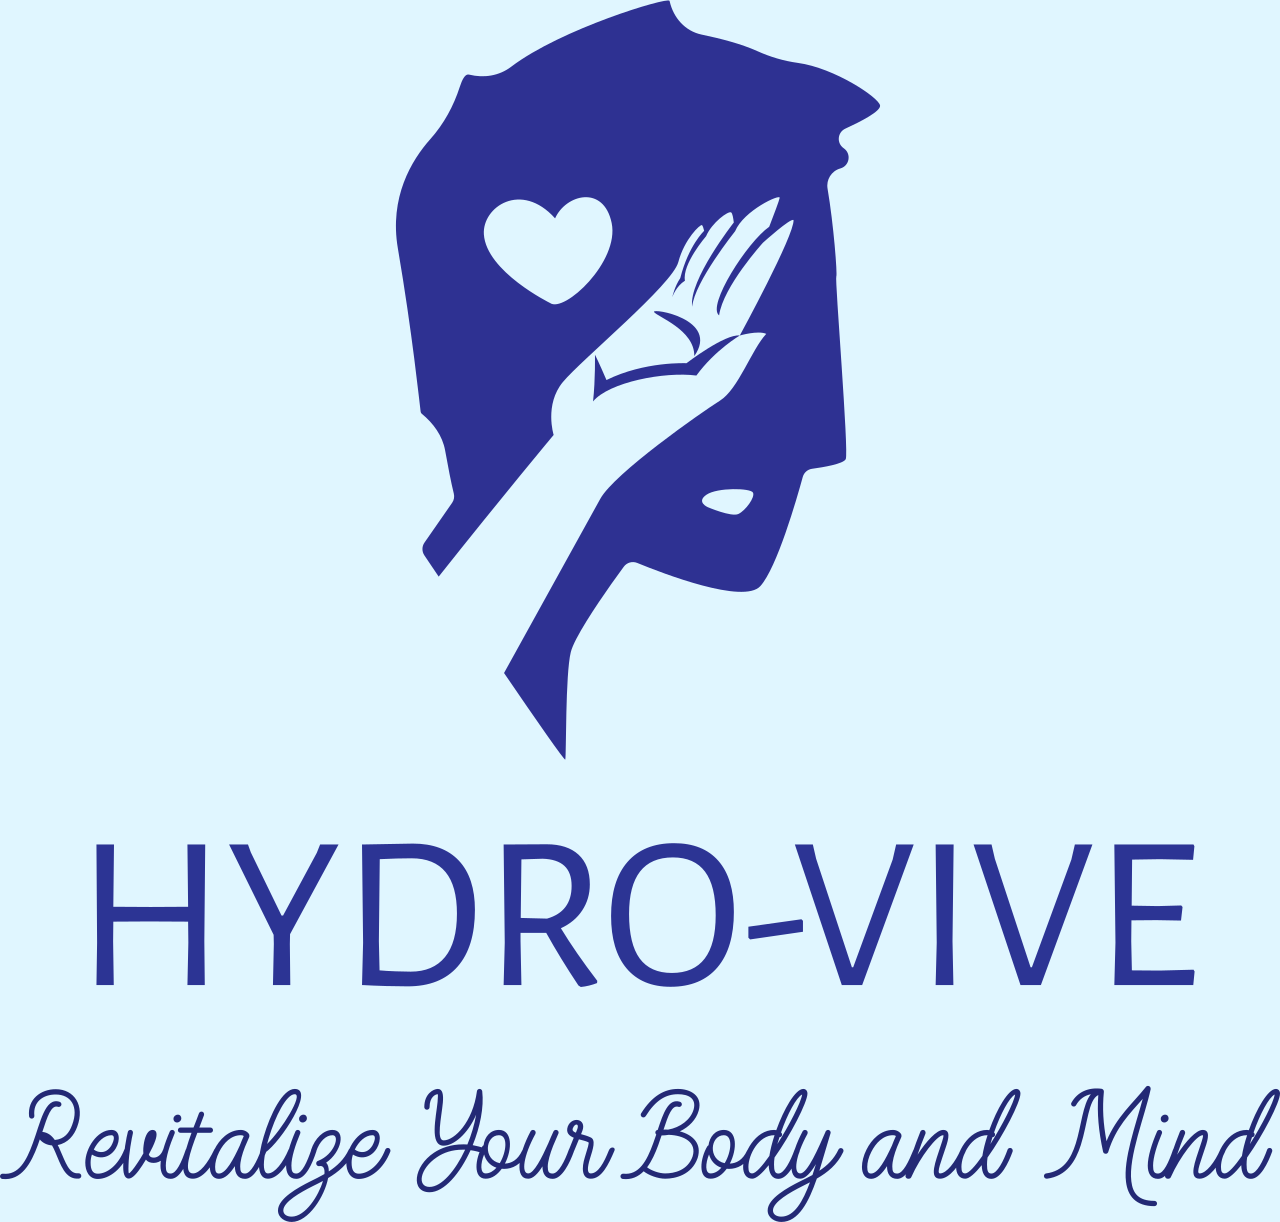 Hydro-Vive's logo